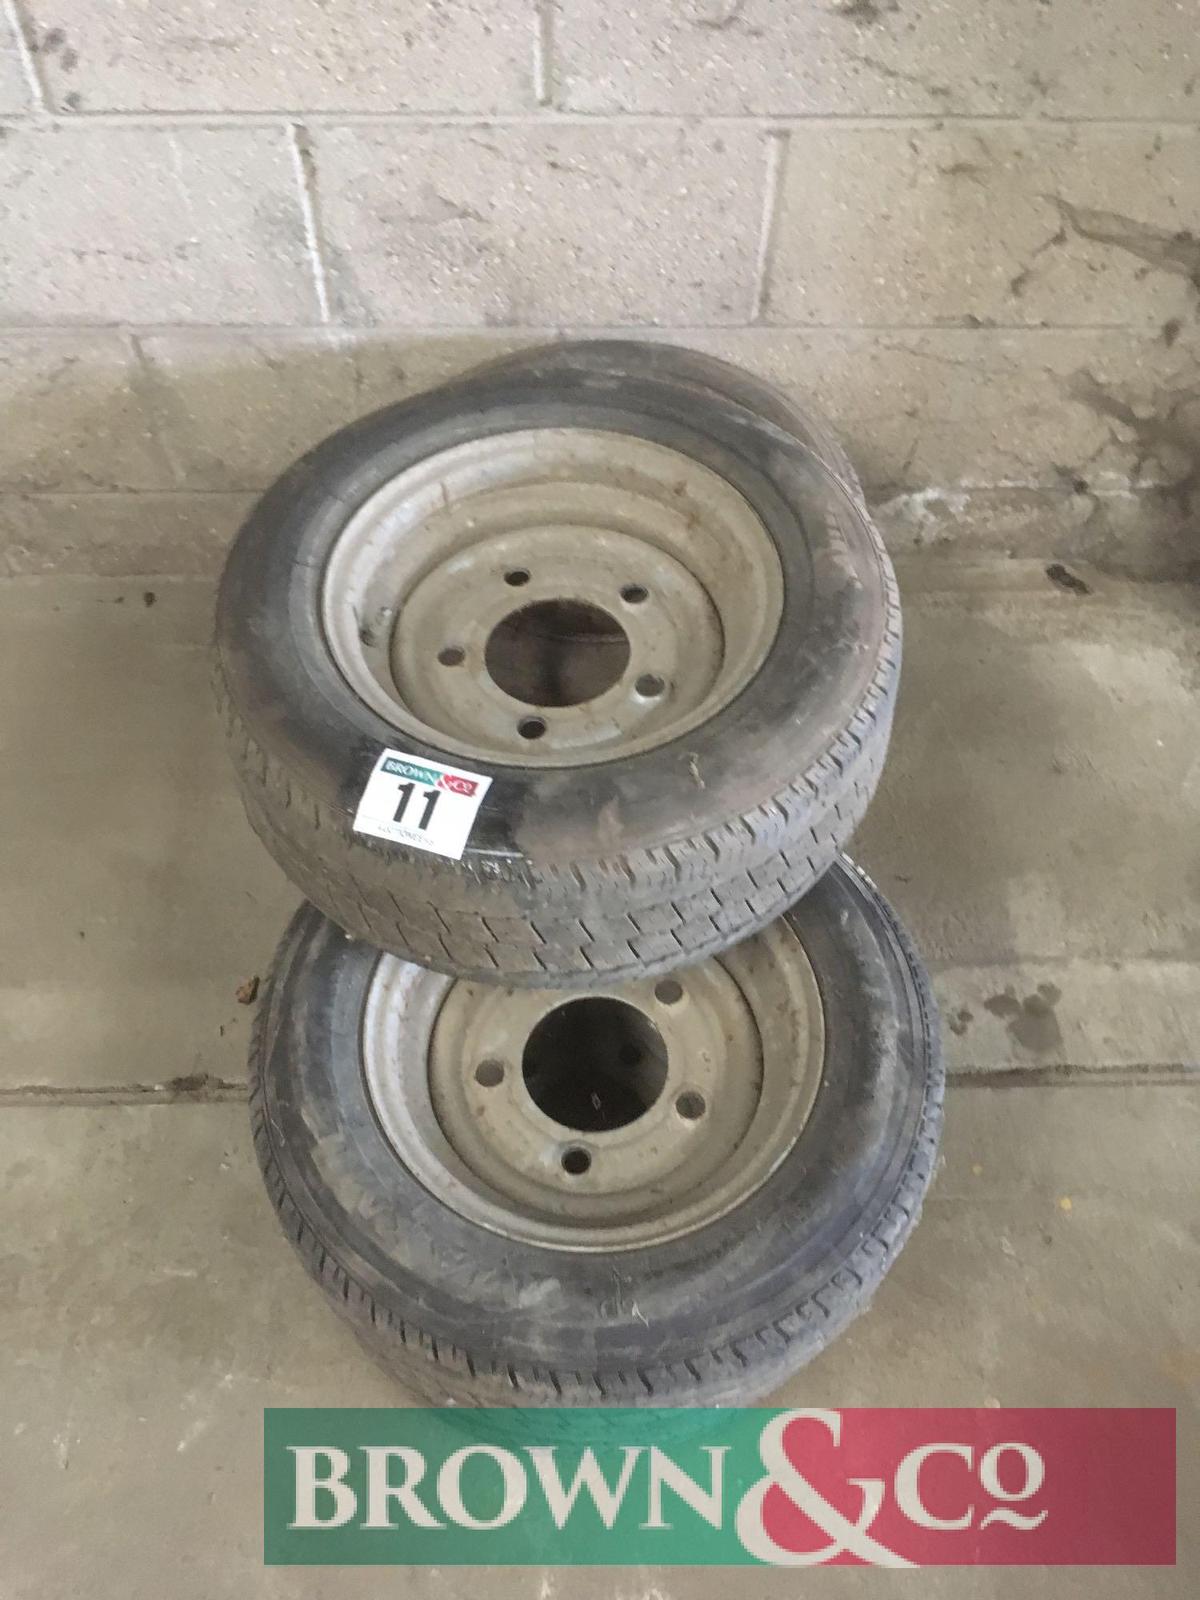 Quantity tyres